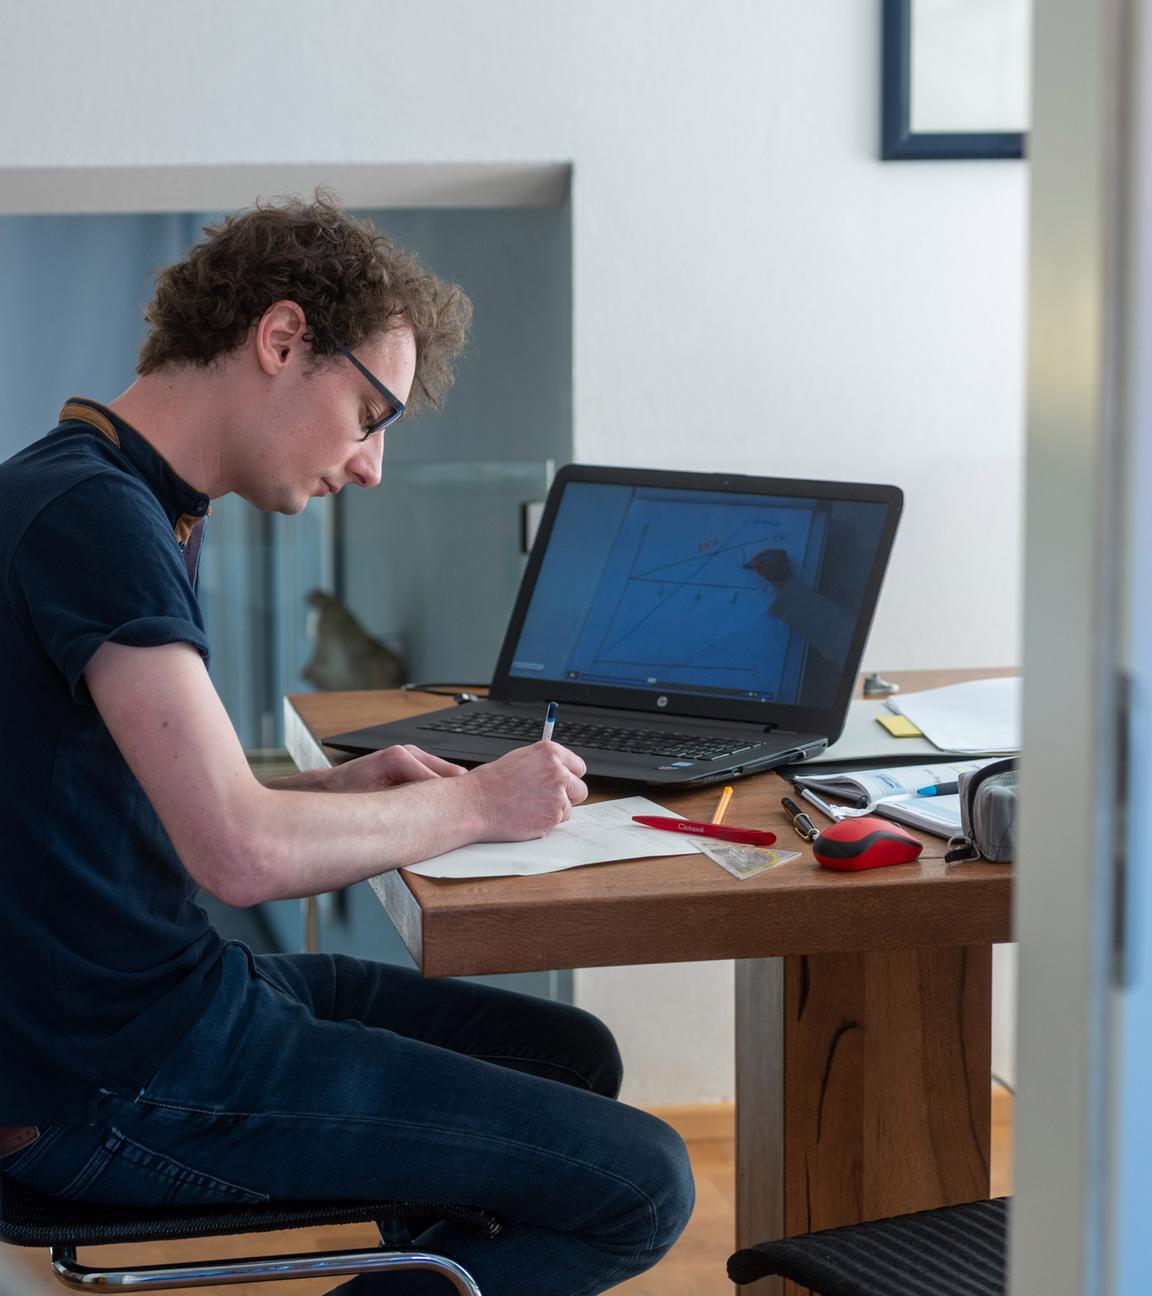 : Ein Student arbeitet zu Hause an seinem Laptop für die Uni. Er schreibt auf einen Zettel, auf dem Laptop läuft eine Vorlesung und um ihn herum auf dem Tisch liegen Stifte, ein Geodreieck, eine Maus, ein Buch und ein Federmäppchen.